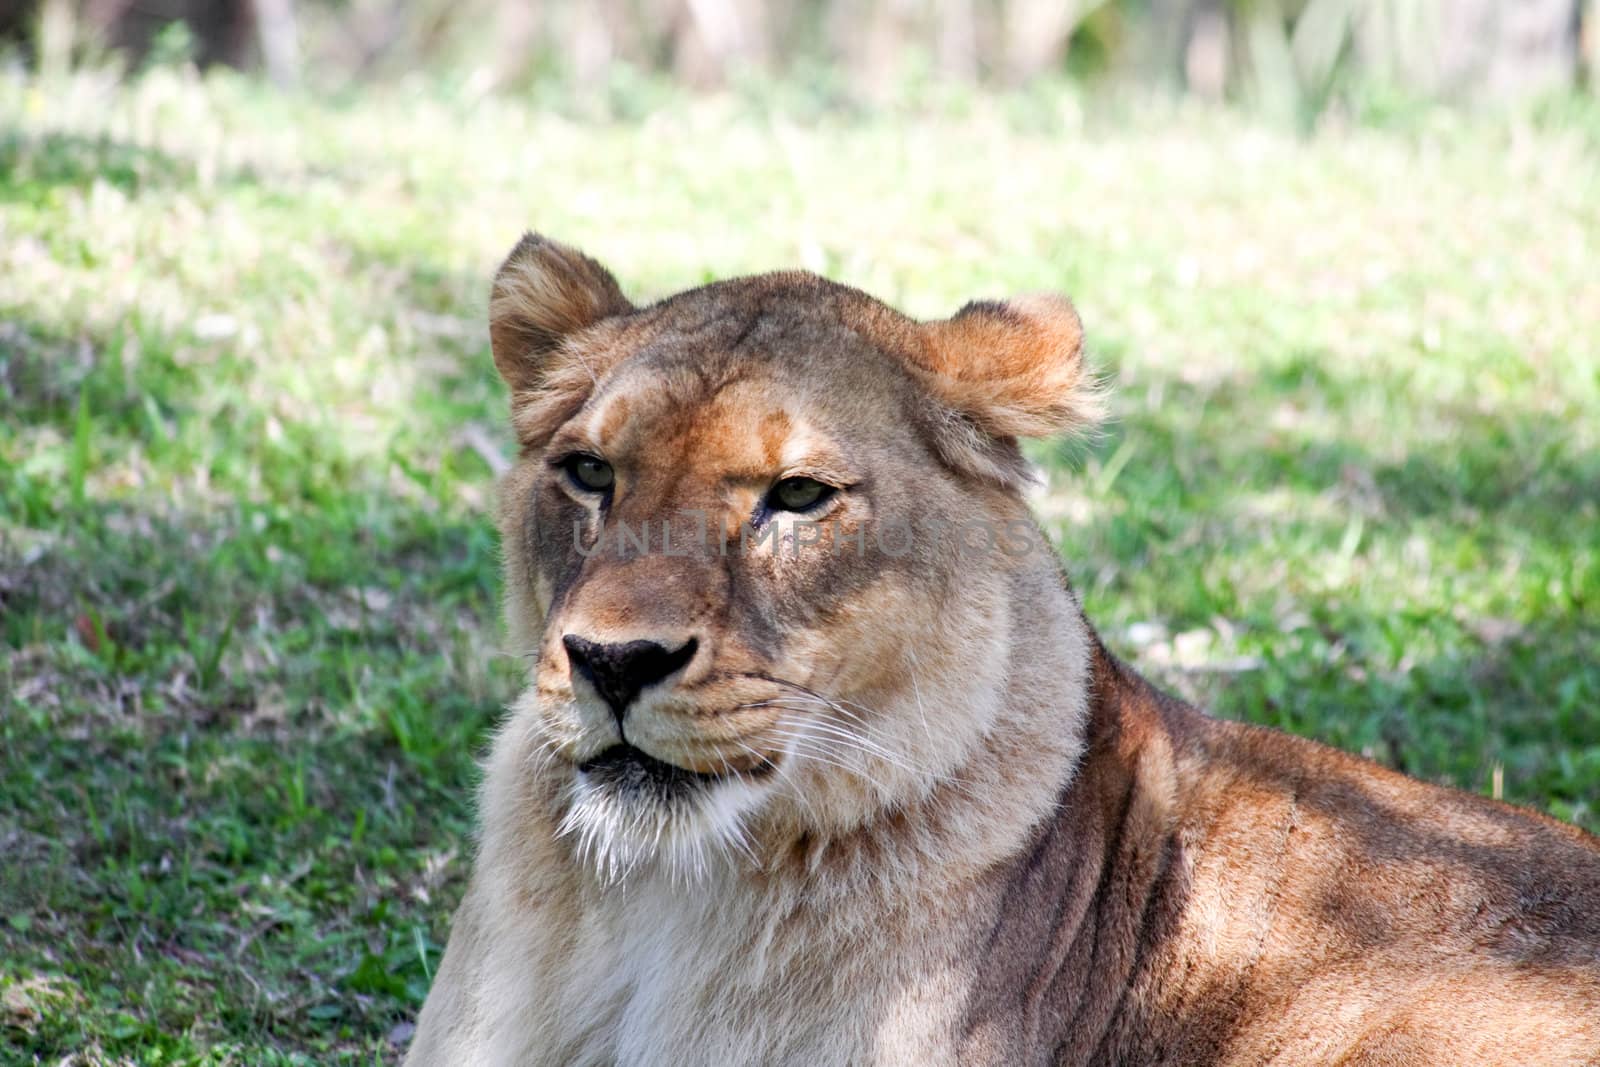 a lion closeup in a florida zoo